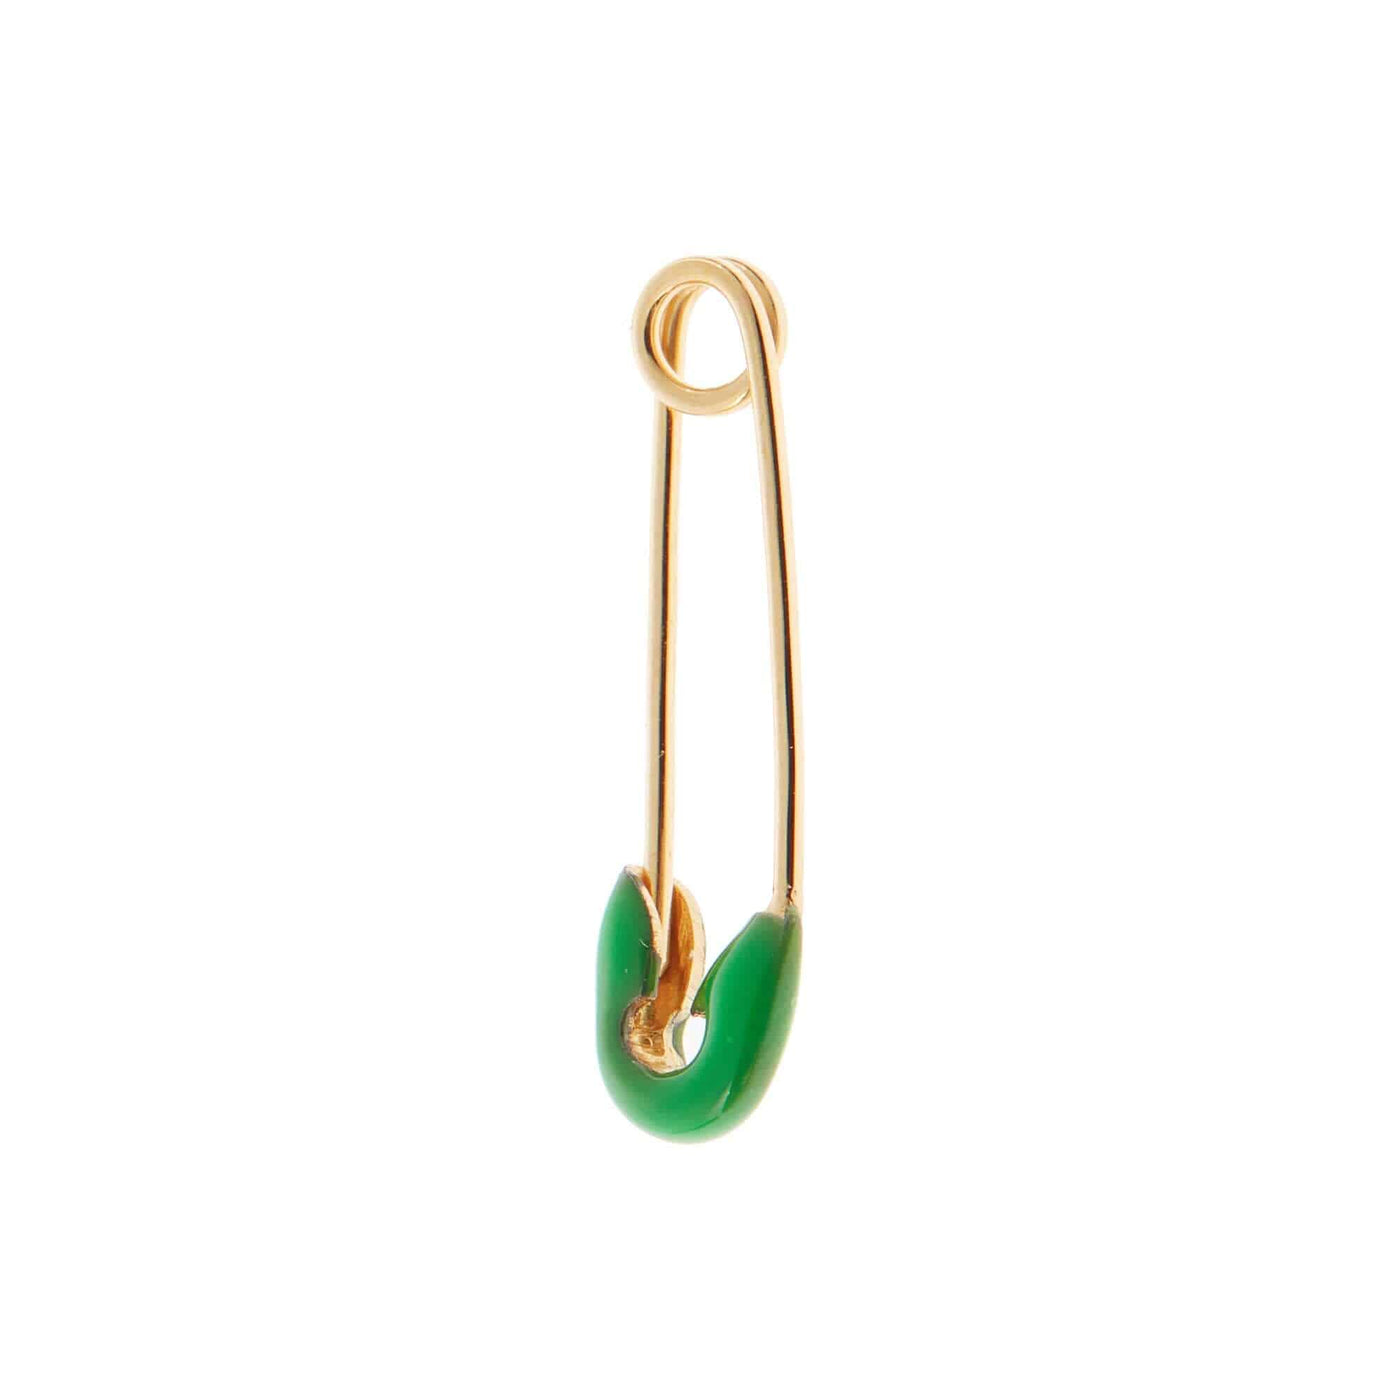 Neon Green Enamel Safety Pin Earring - Eye M by Ileana Makri